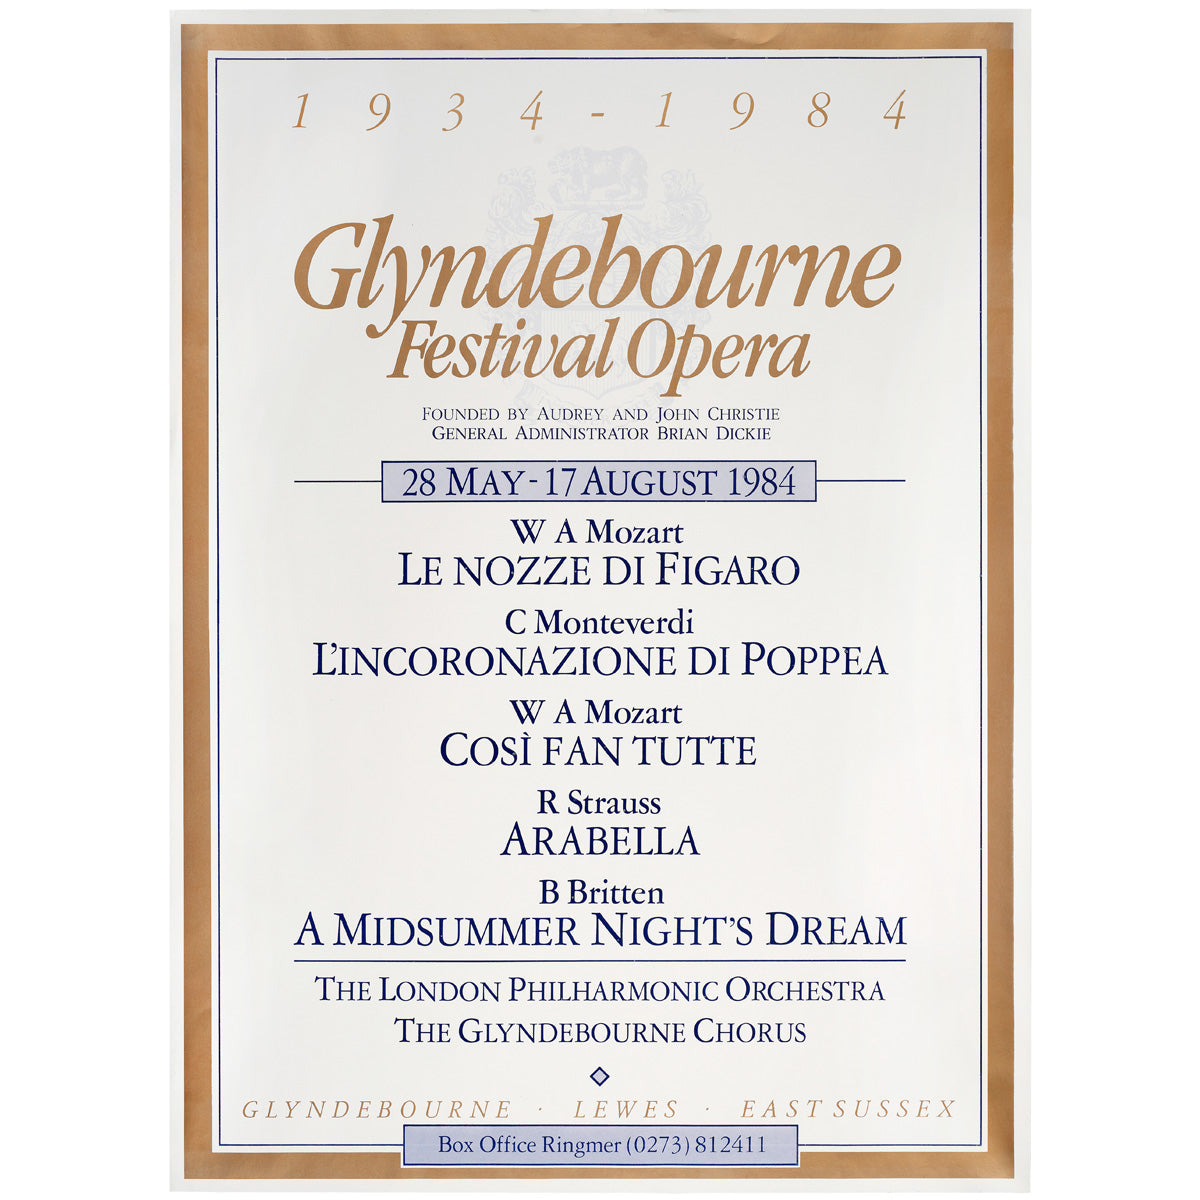 Glyndebourne Festival Opera 1984 Poster Glyndebourne Shop